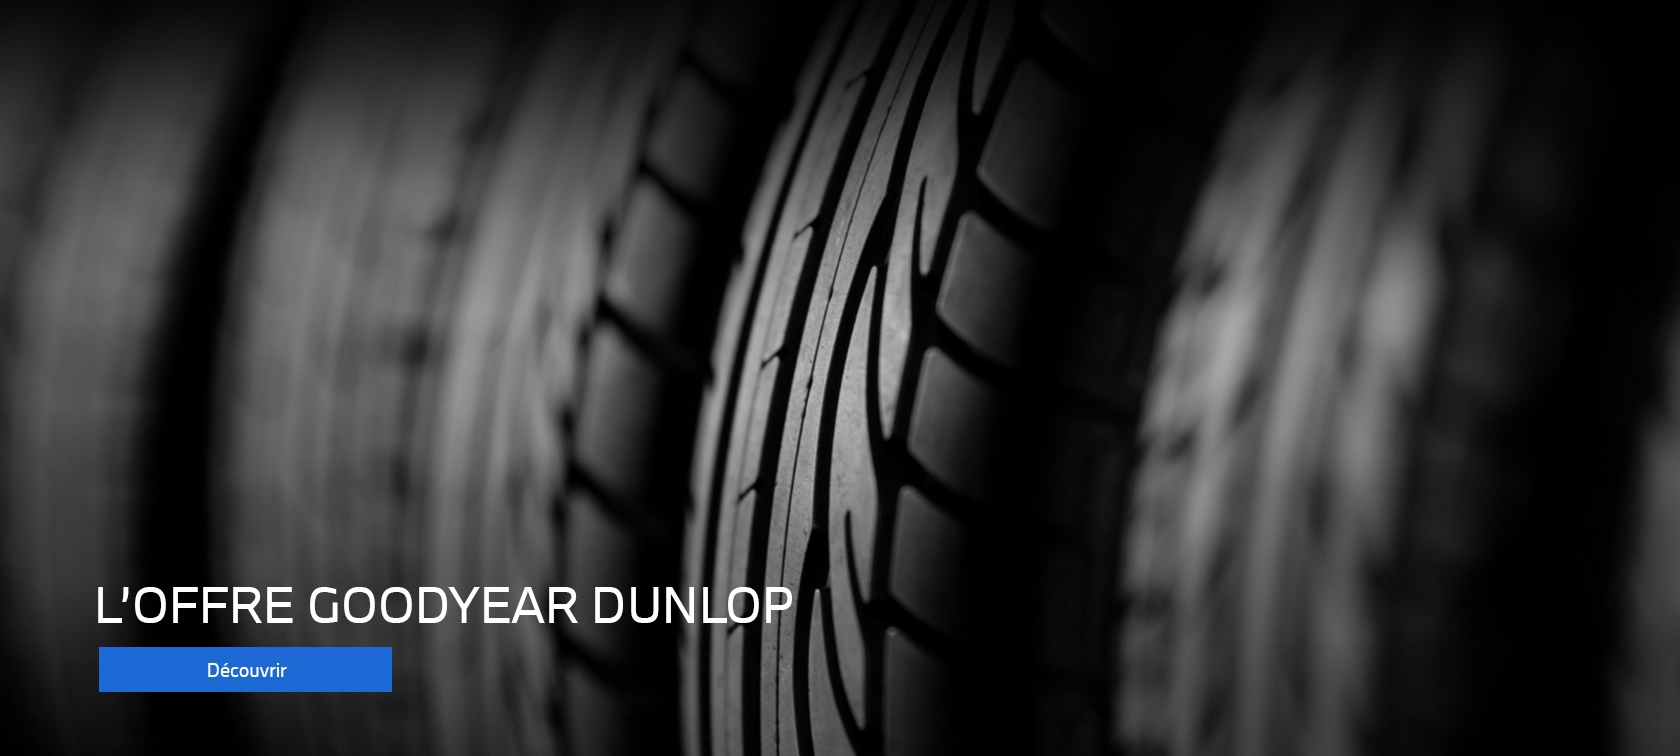 Offre pneumatiques Goodyear Dunlop